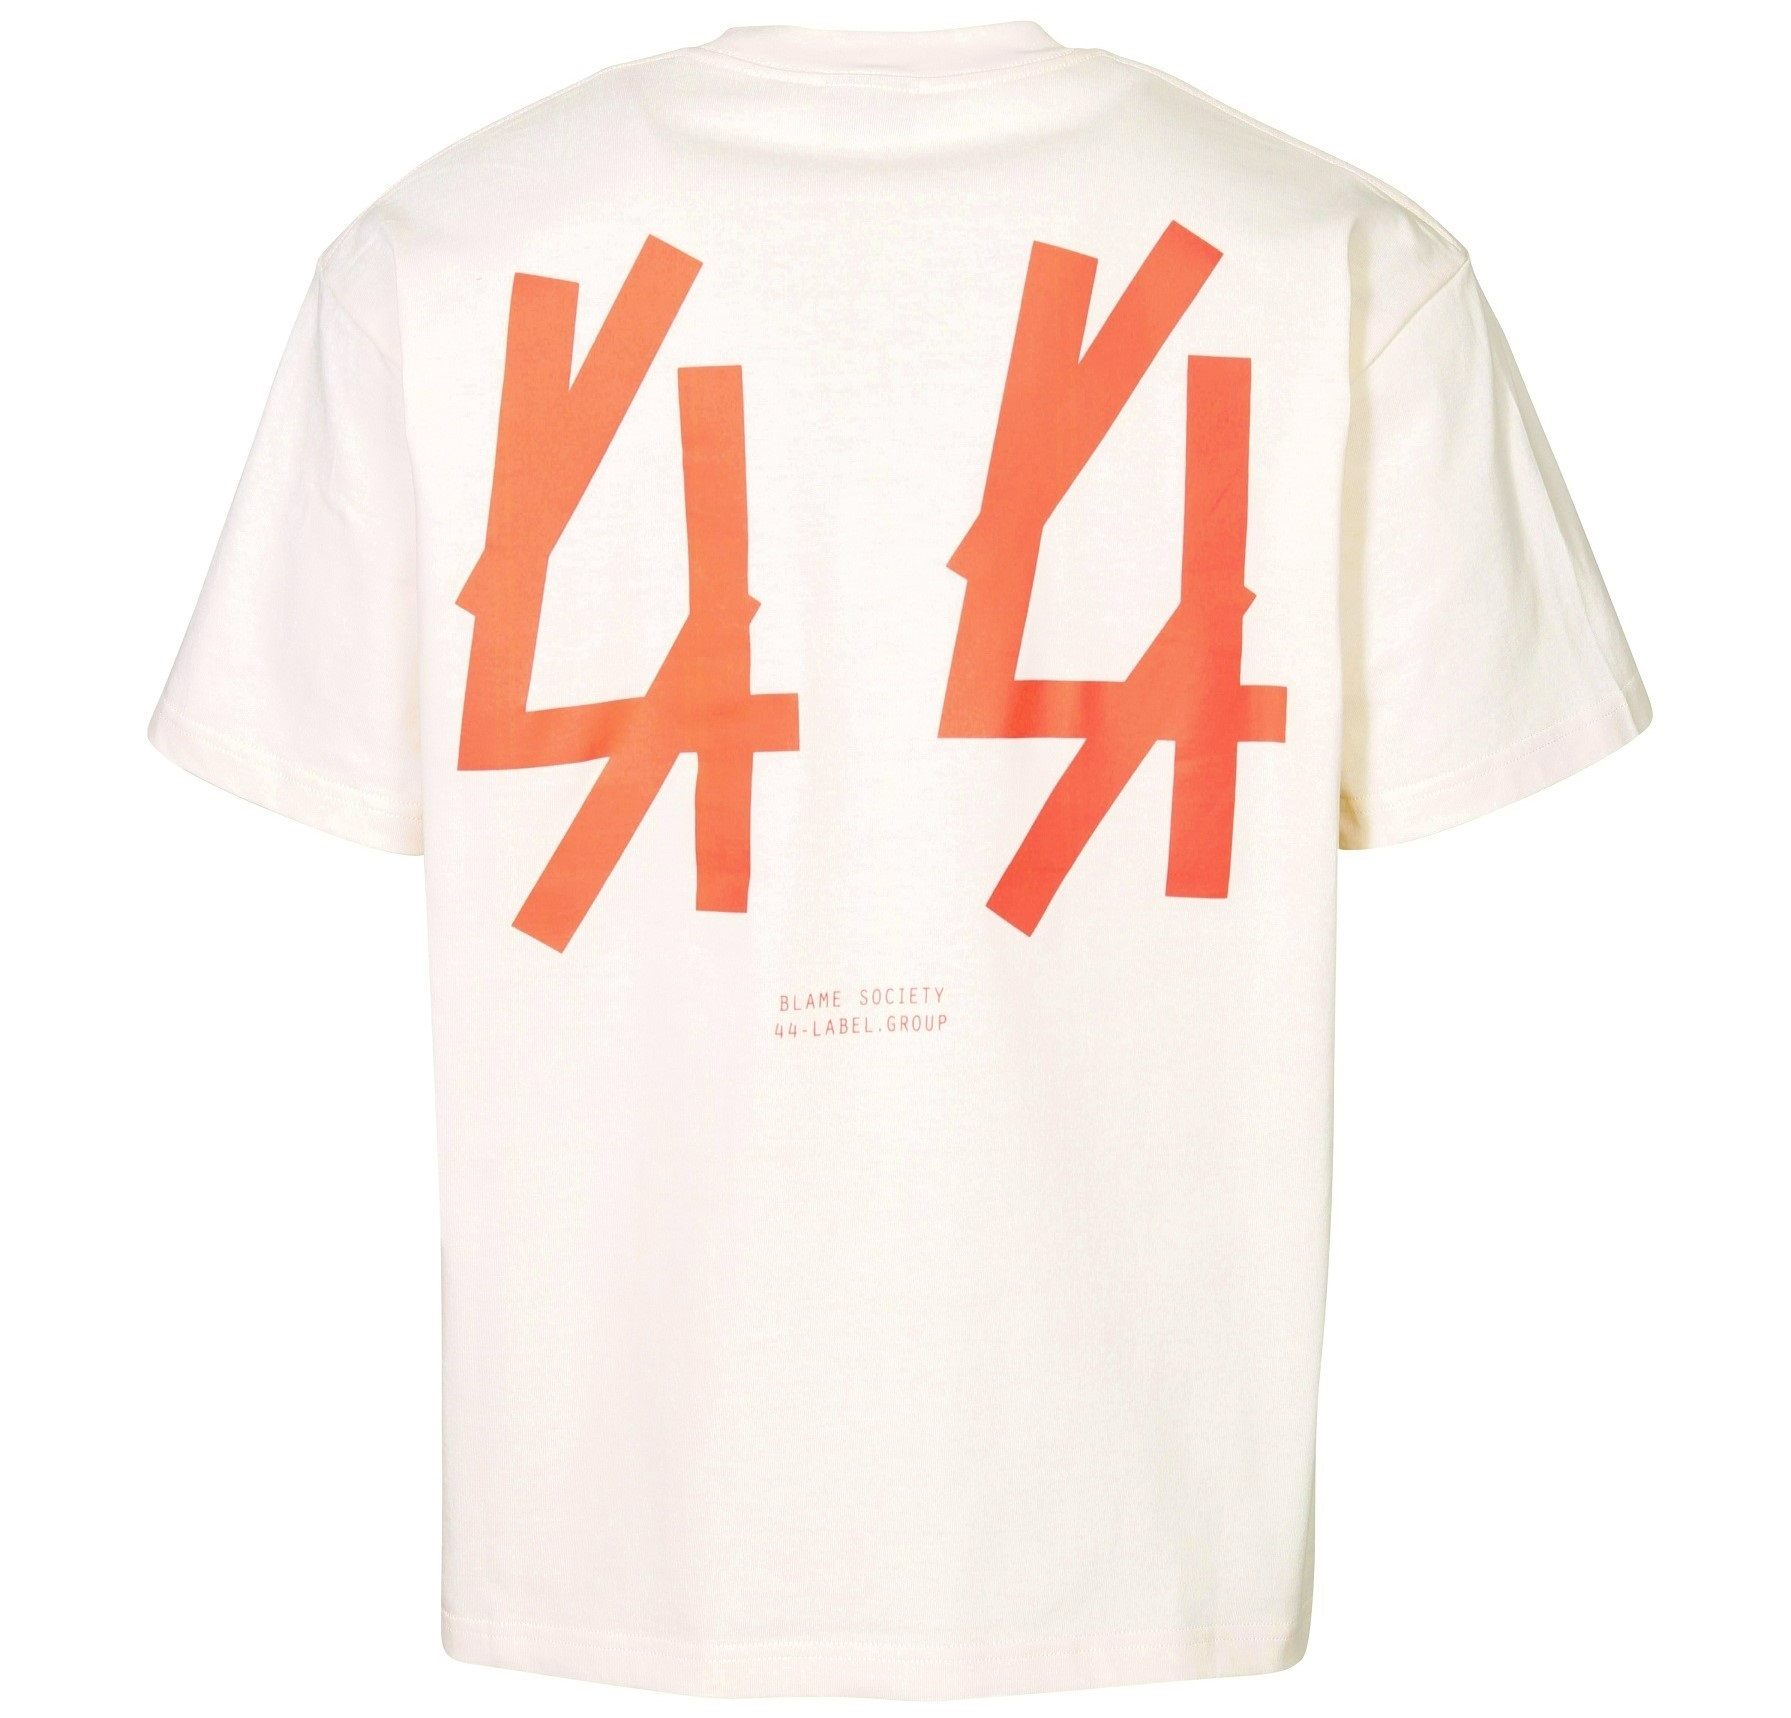 44 LABEL GROUP Original T-Shirt in Bones/Neon Print